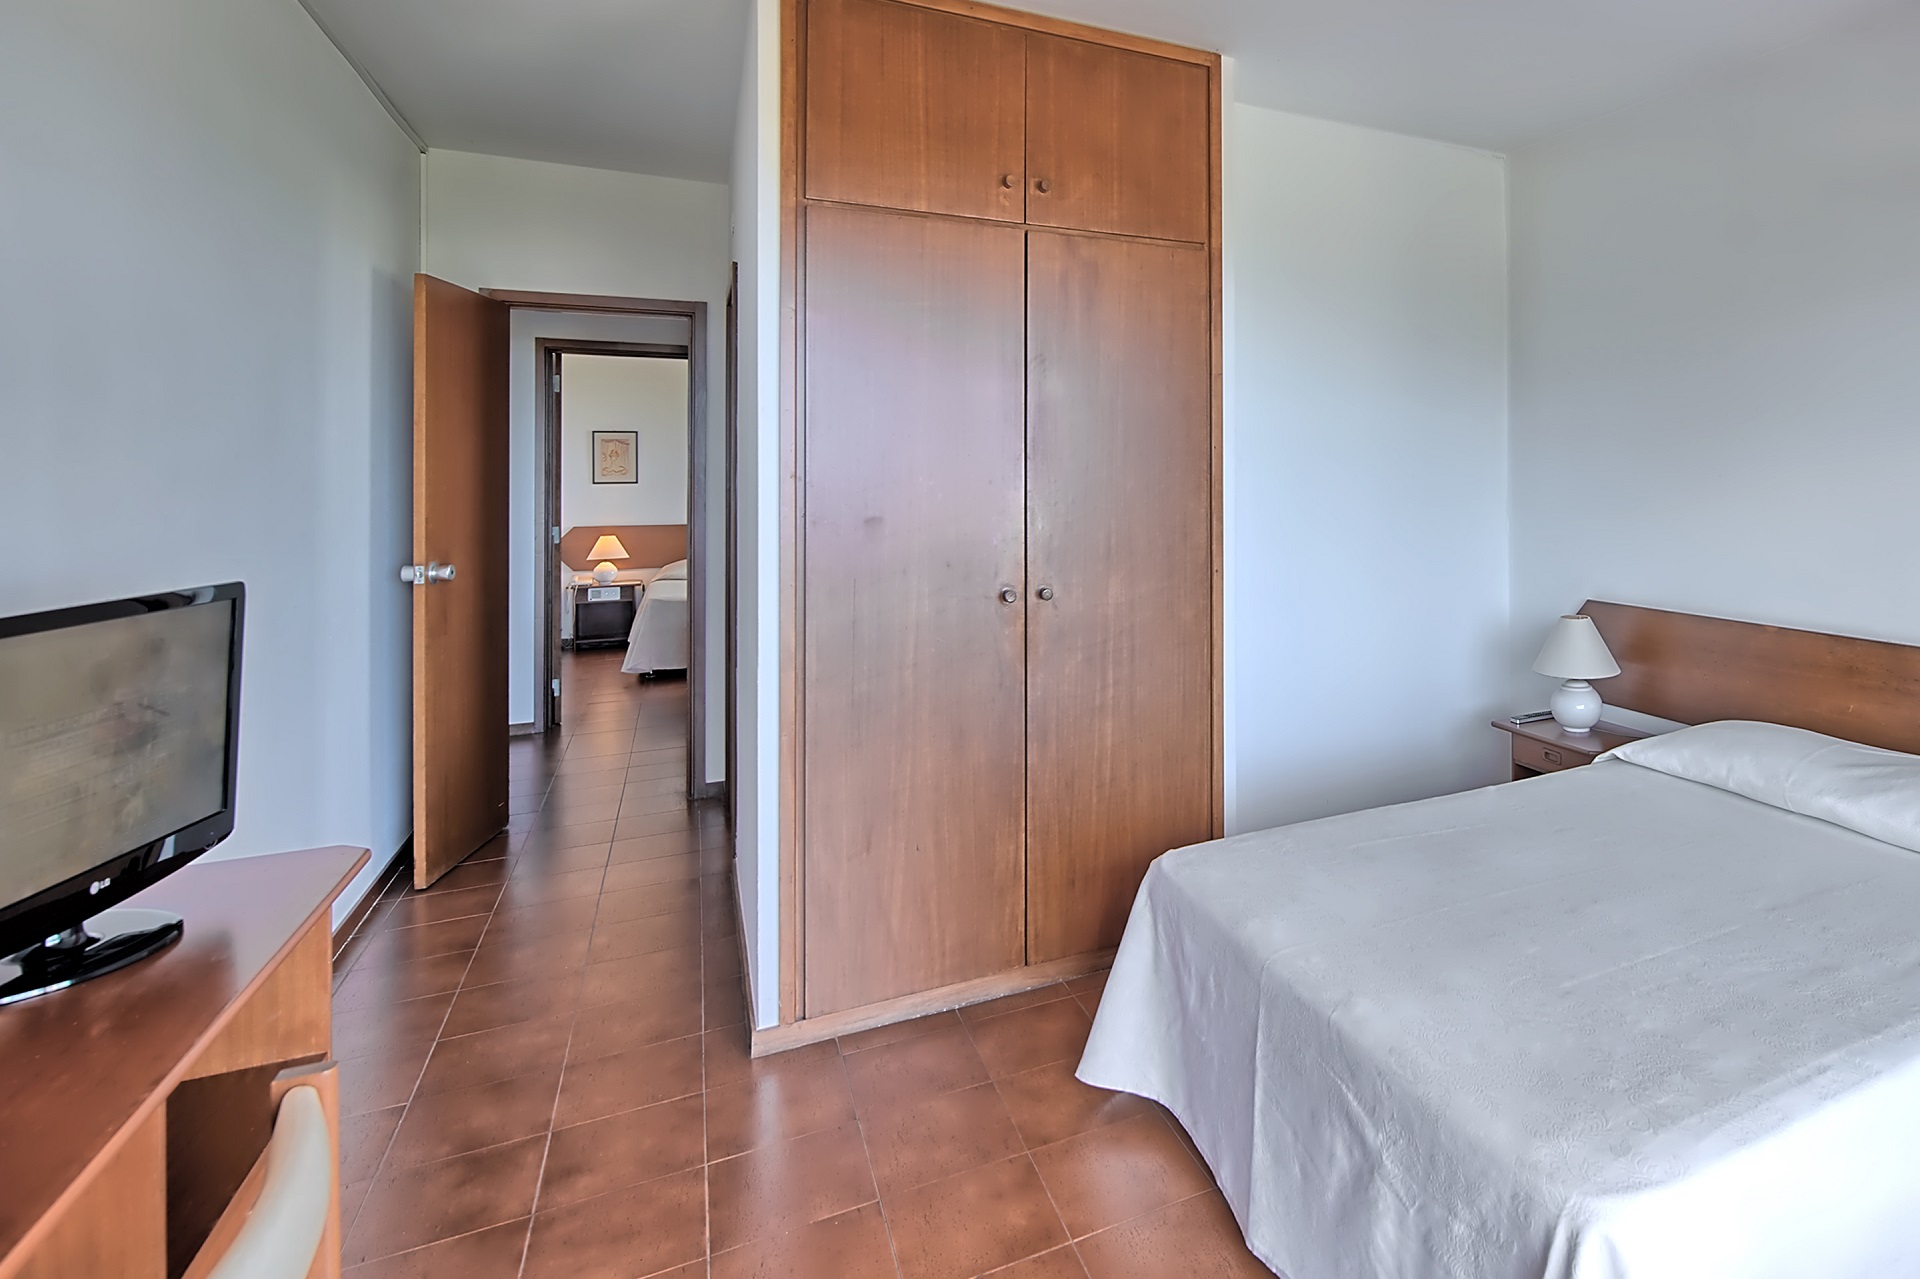 Dom Pedro Portobelo Apartment Hotel & Golf | Golf på Algarve